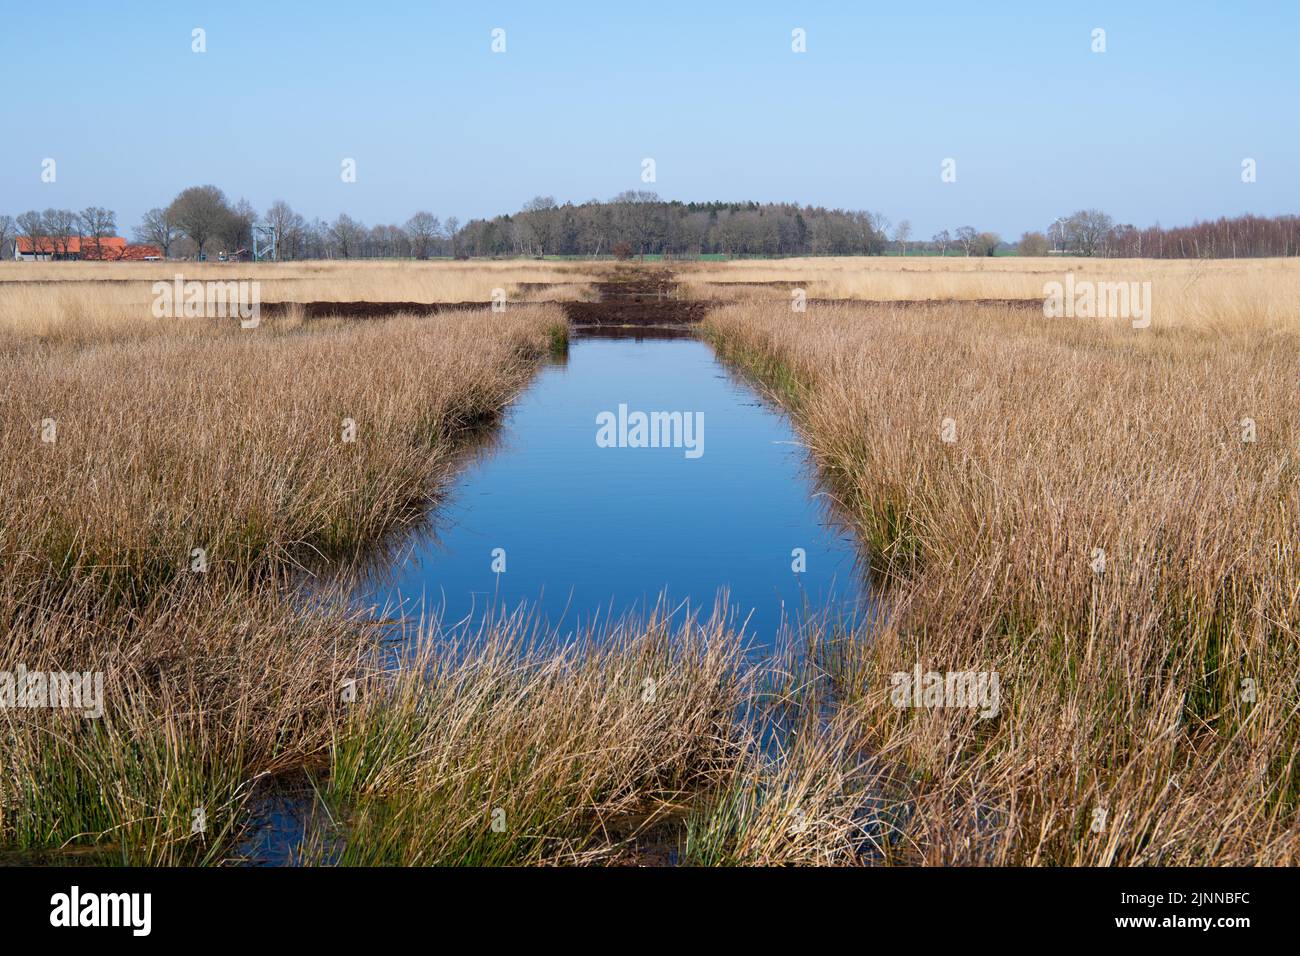 Resouillage de Bockholter dose, barrages nouvellement construits pour contenir plus d'eau dans la réserve naturelle, Basse-Saxe, Allemagne Banque D'Images